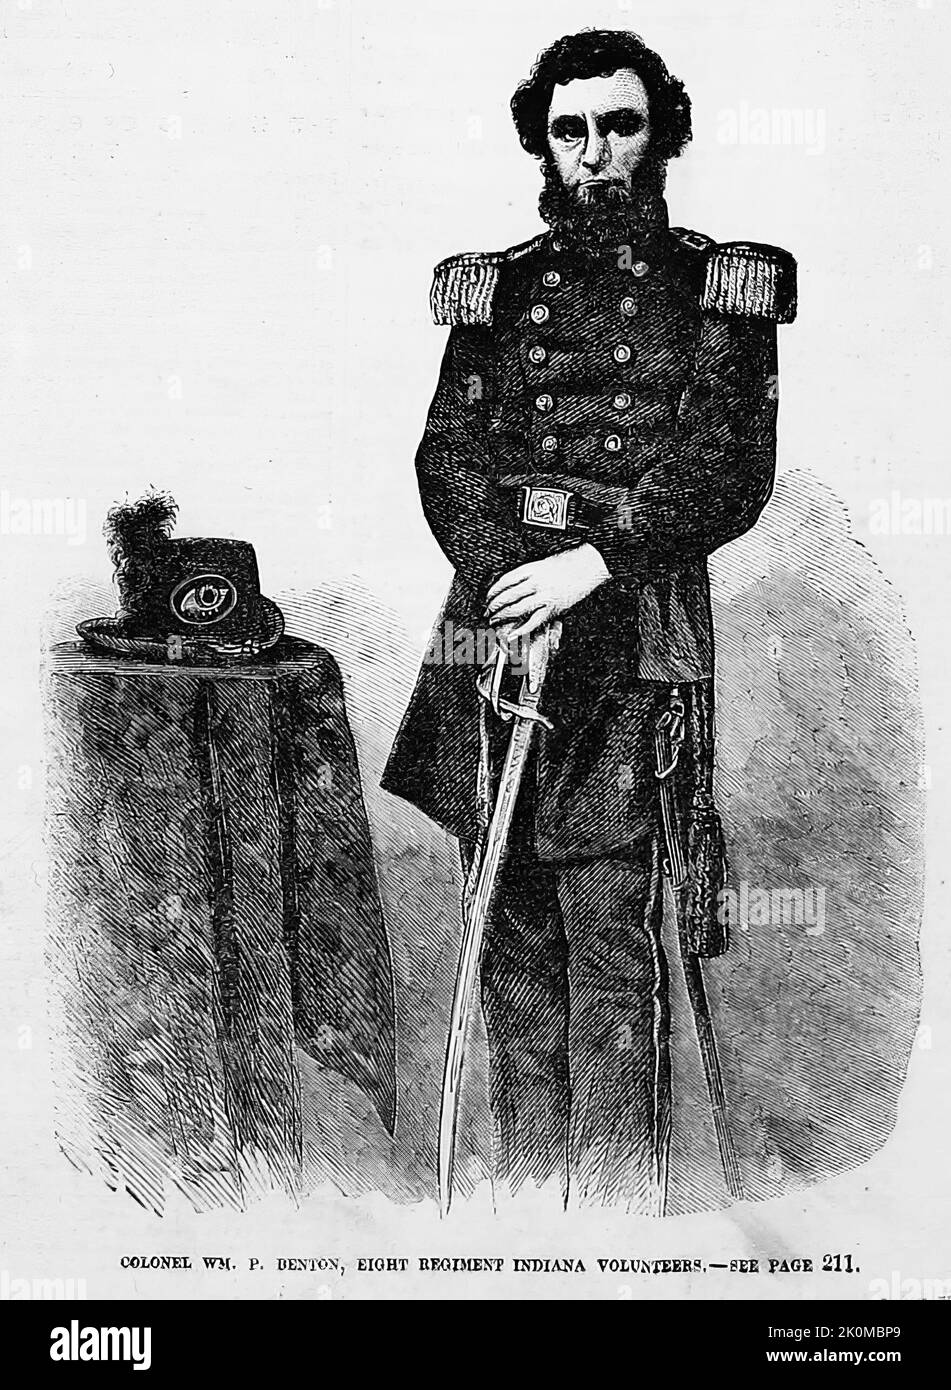 Portrait du colonel William Plummer Benton, huit Regiment Indiana Volunteers. Août 1861. Illustration de la guerre de Sécession américaine du 19th siècle tirée du journal illustré de Frank Leslie Banque D'Images